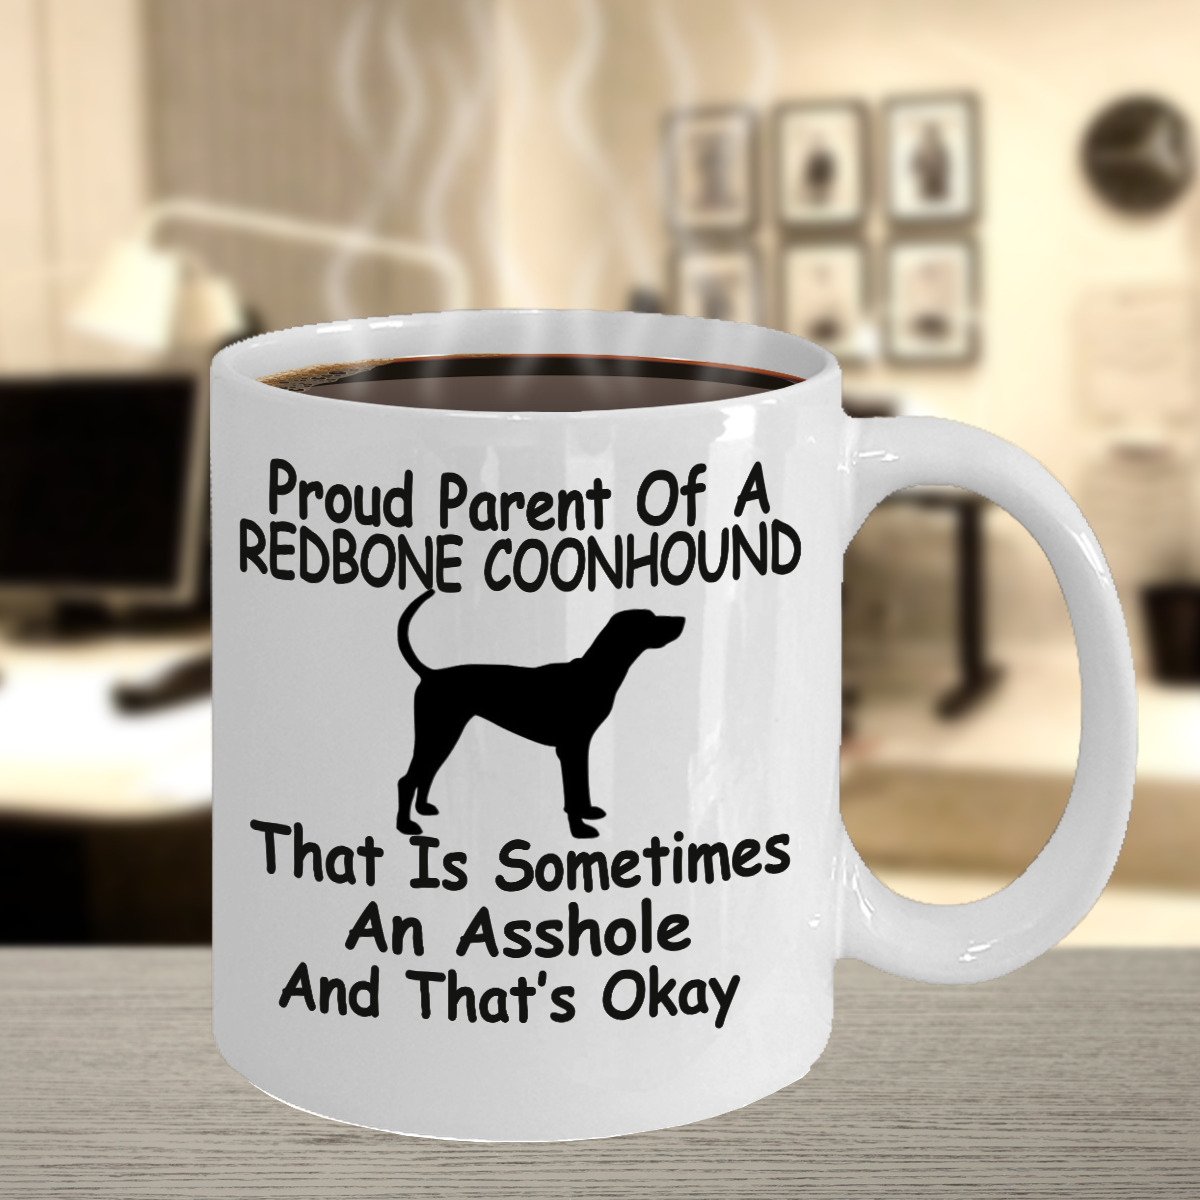 Redbone Coonhound Dog,Redbone Coonhound,Reds,Redbone,Dog,Cup,Coffee Mugs